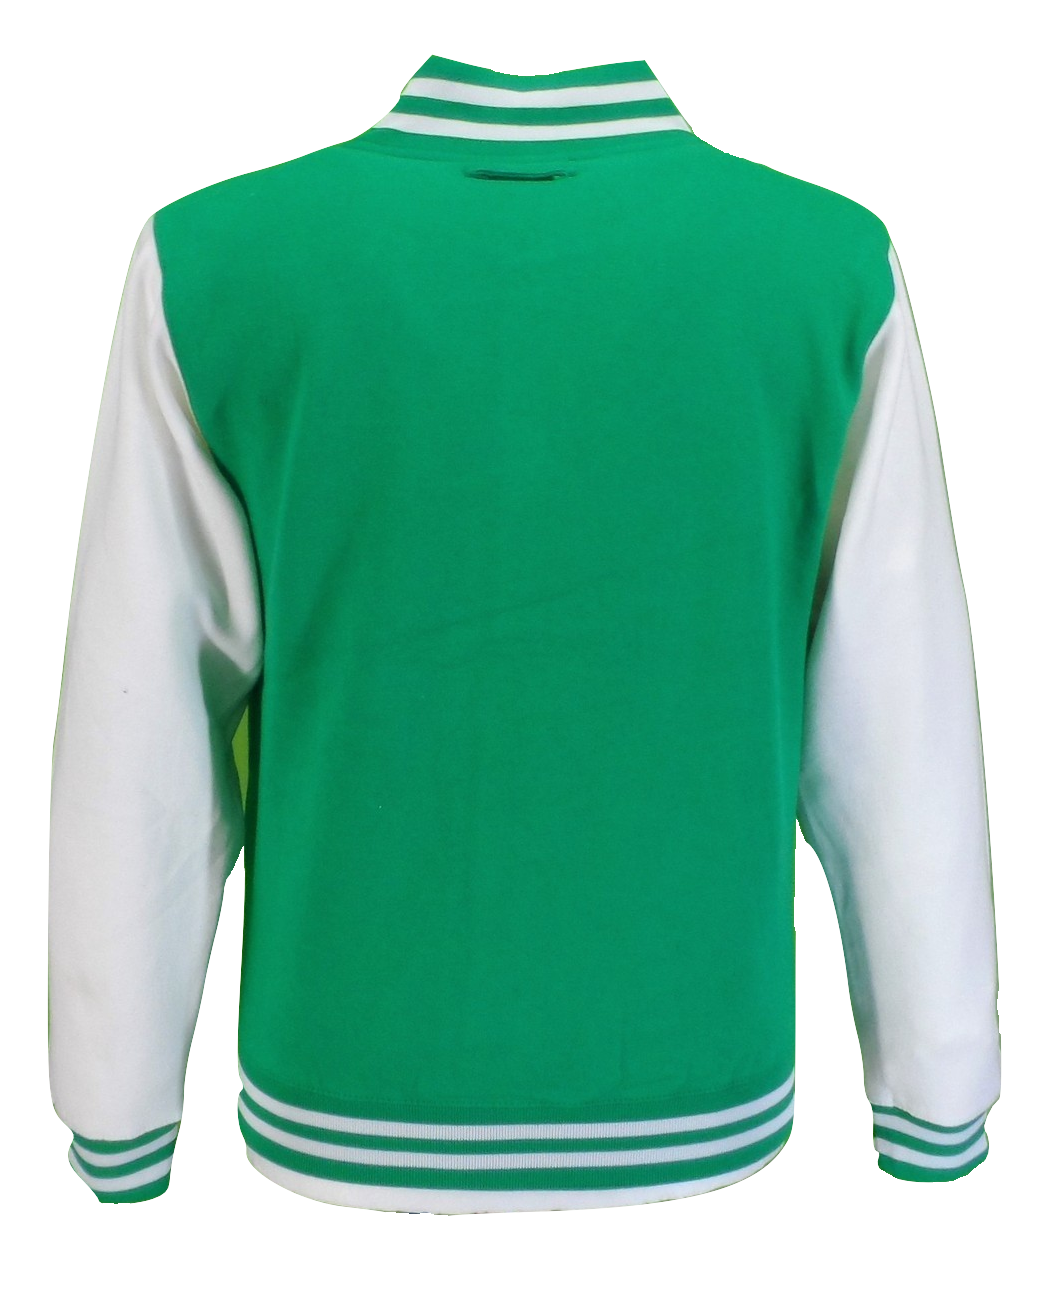 Grün/weiße College-Letterman-Jacken für Herren im Retro-Stil